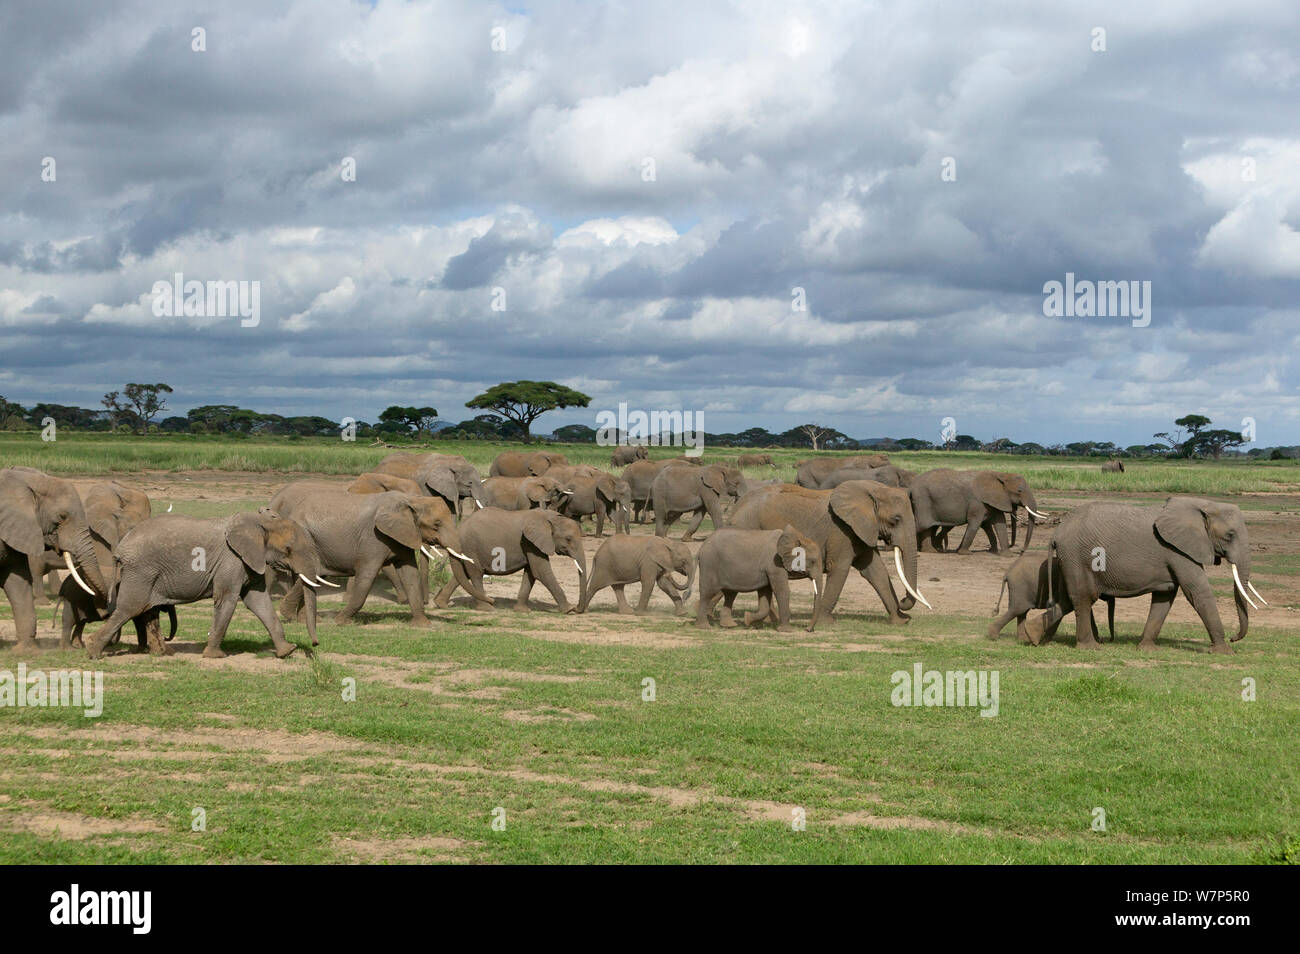 L'éléphant africain (Loxodonta africana) grand troupeau en déplacement. Le Parc national Amboseli, au Kenya. Banque D'Images